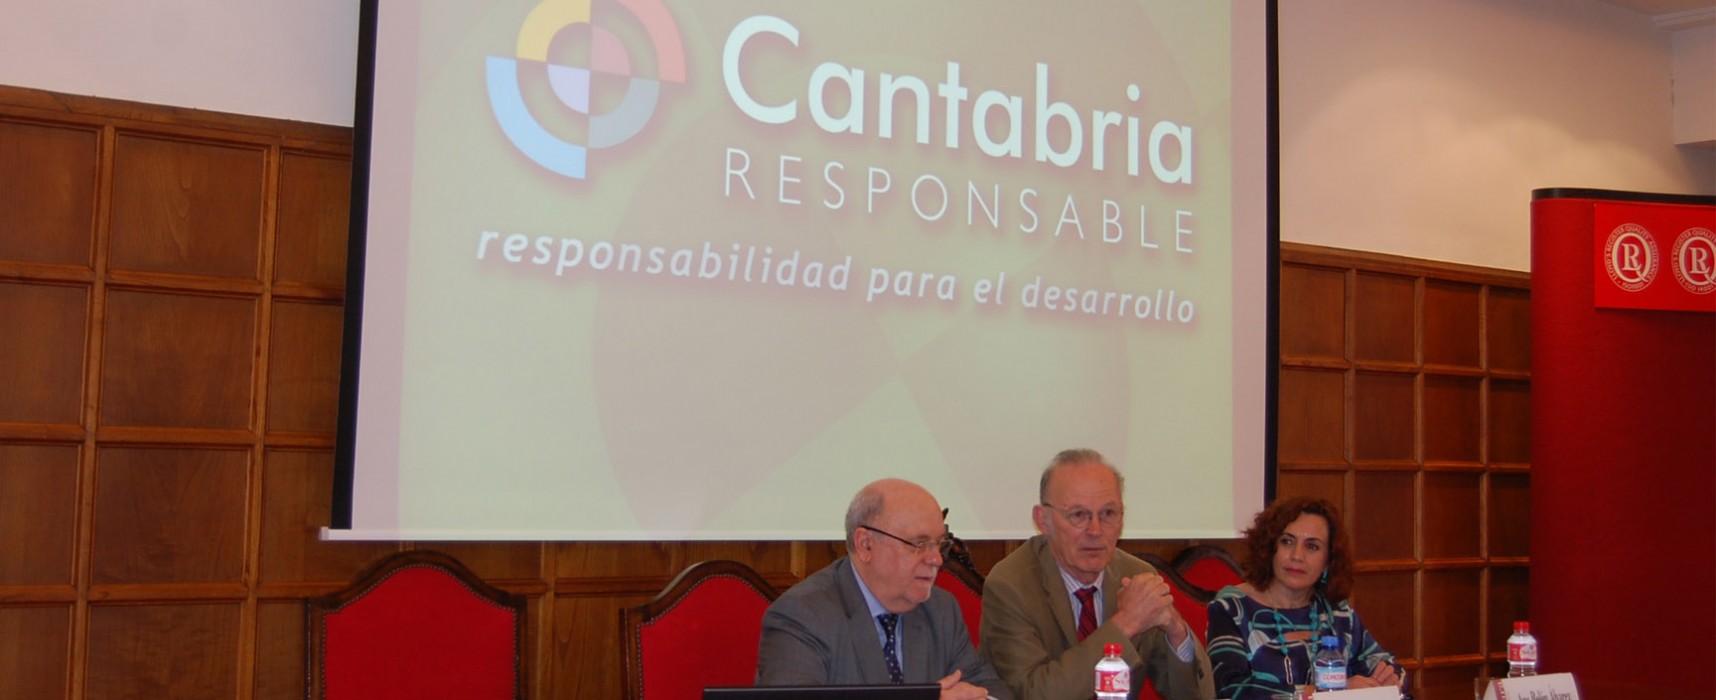 El Gobierno de Cantabria promueve que más empresas se sumen a la Responsabilidad Social Empresarial